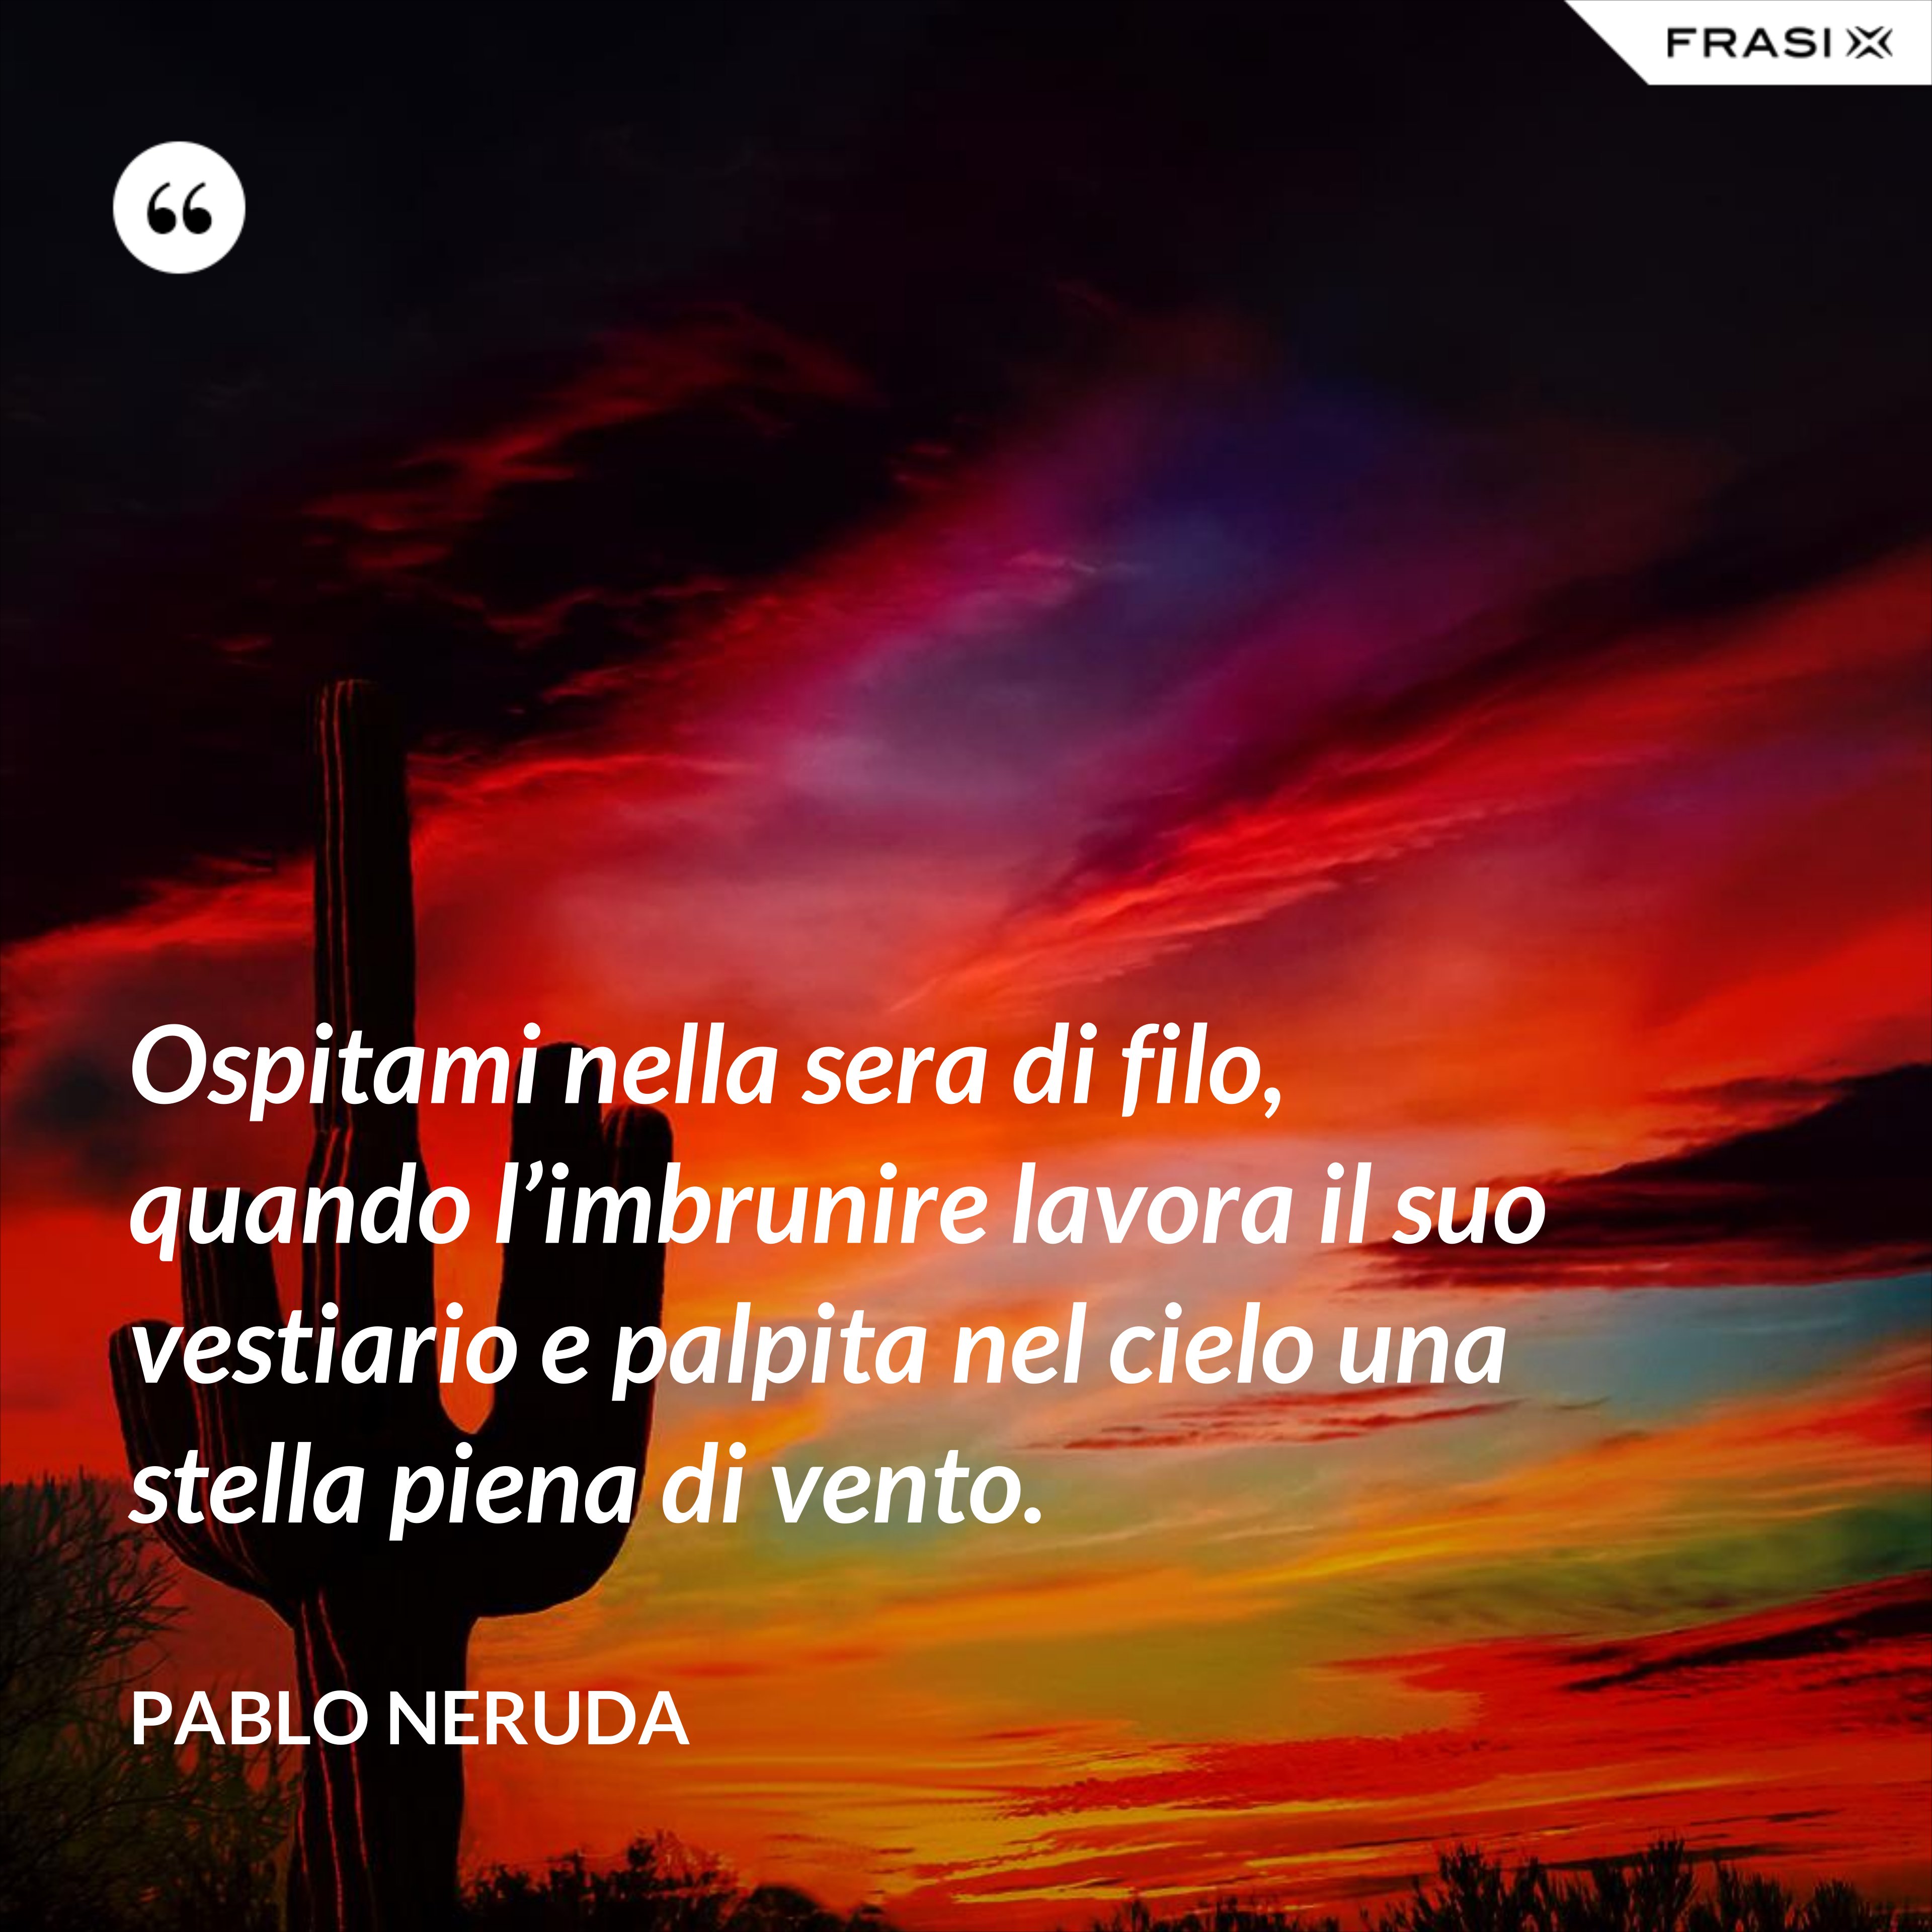 Ospitami nella sera di filo, quando l’imbrunire lavora il suo vestiario e palpita nel cielo una stella piena di vento. - Pablo Neruda